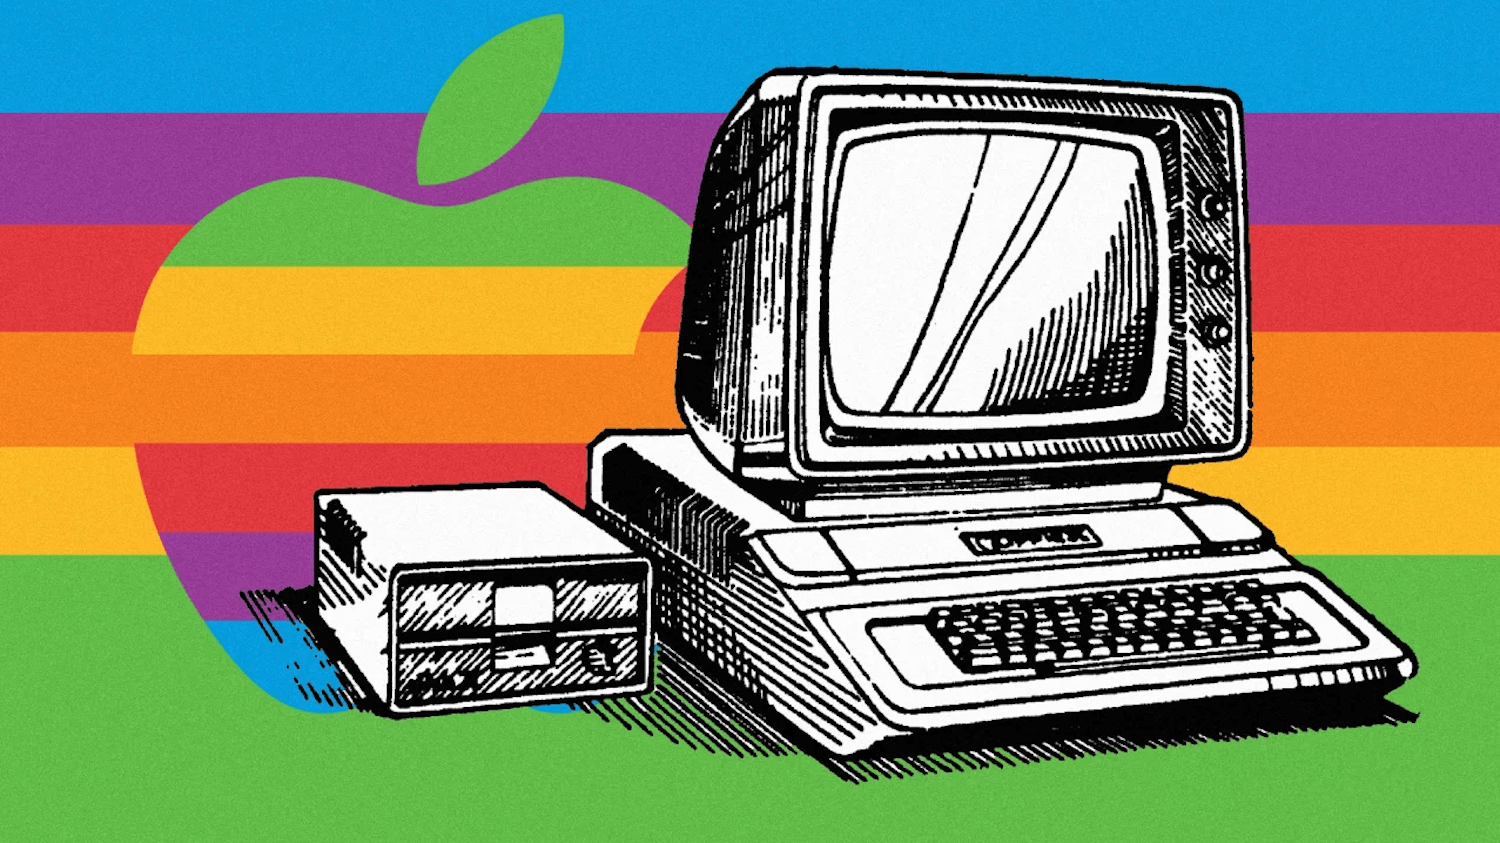 Про «ту Apple»-7. 1985 год, LaserWriter и PageMaker